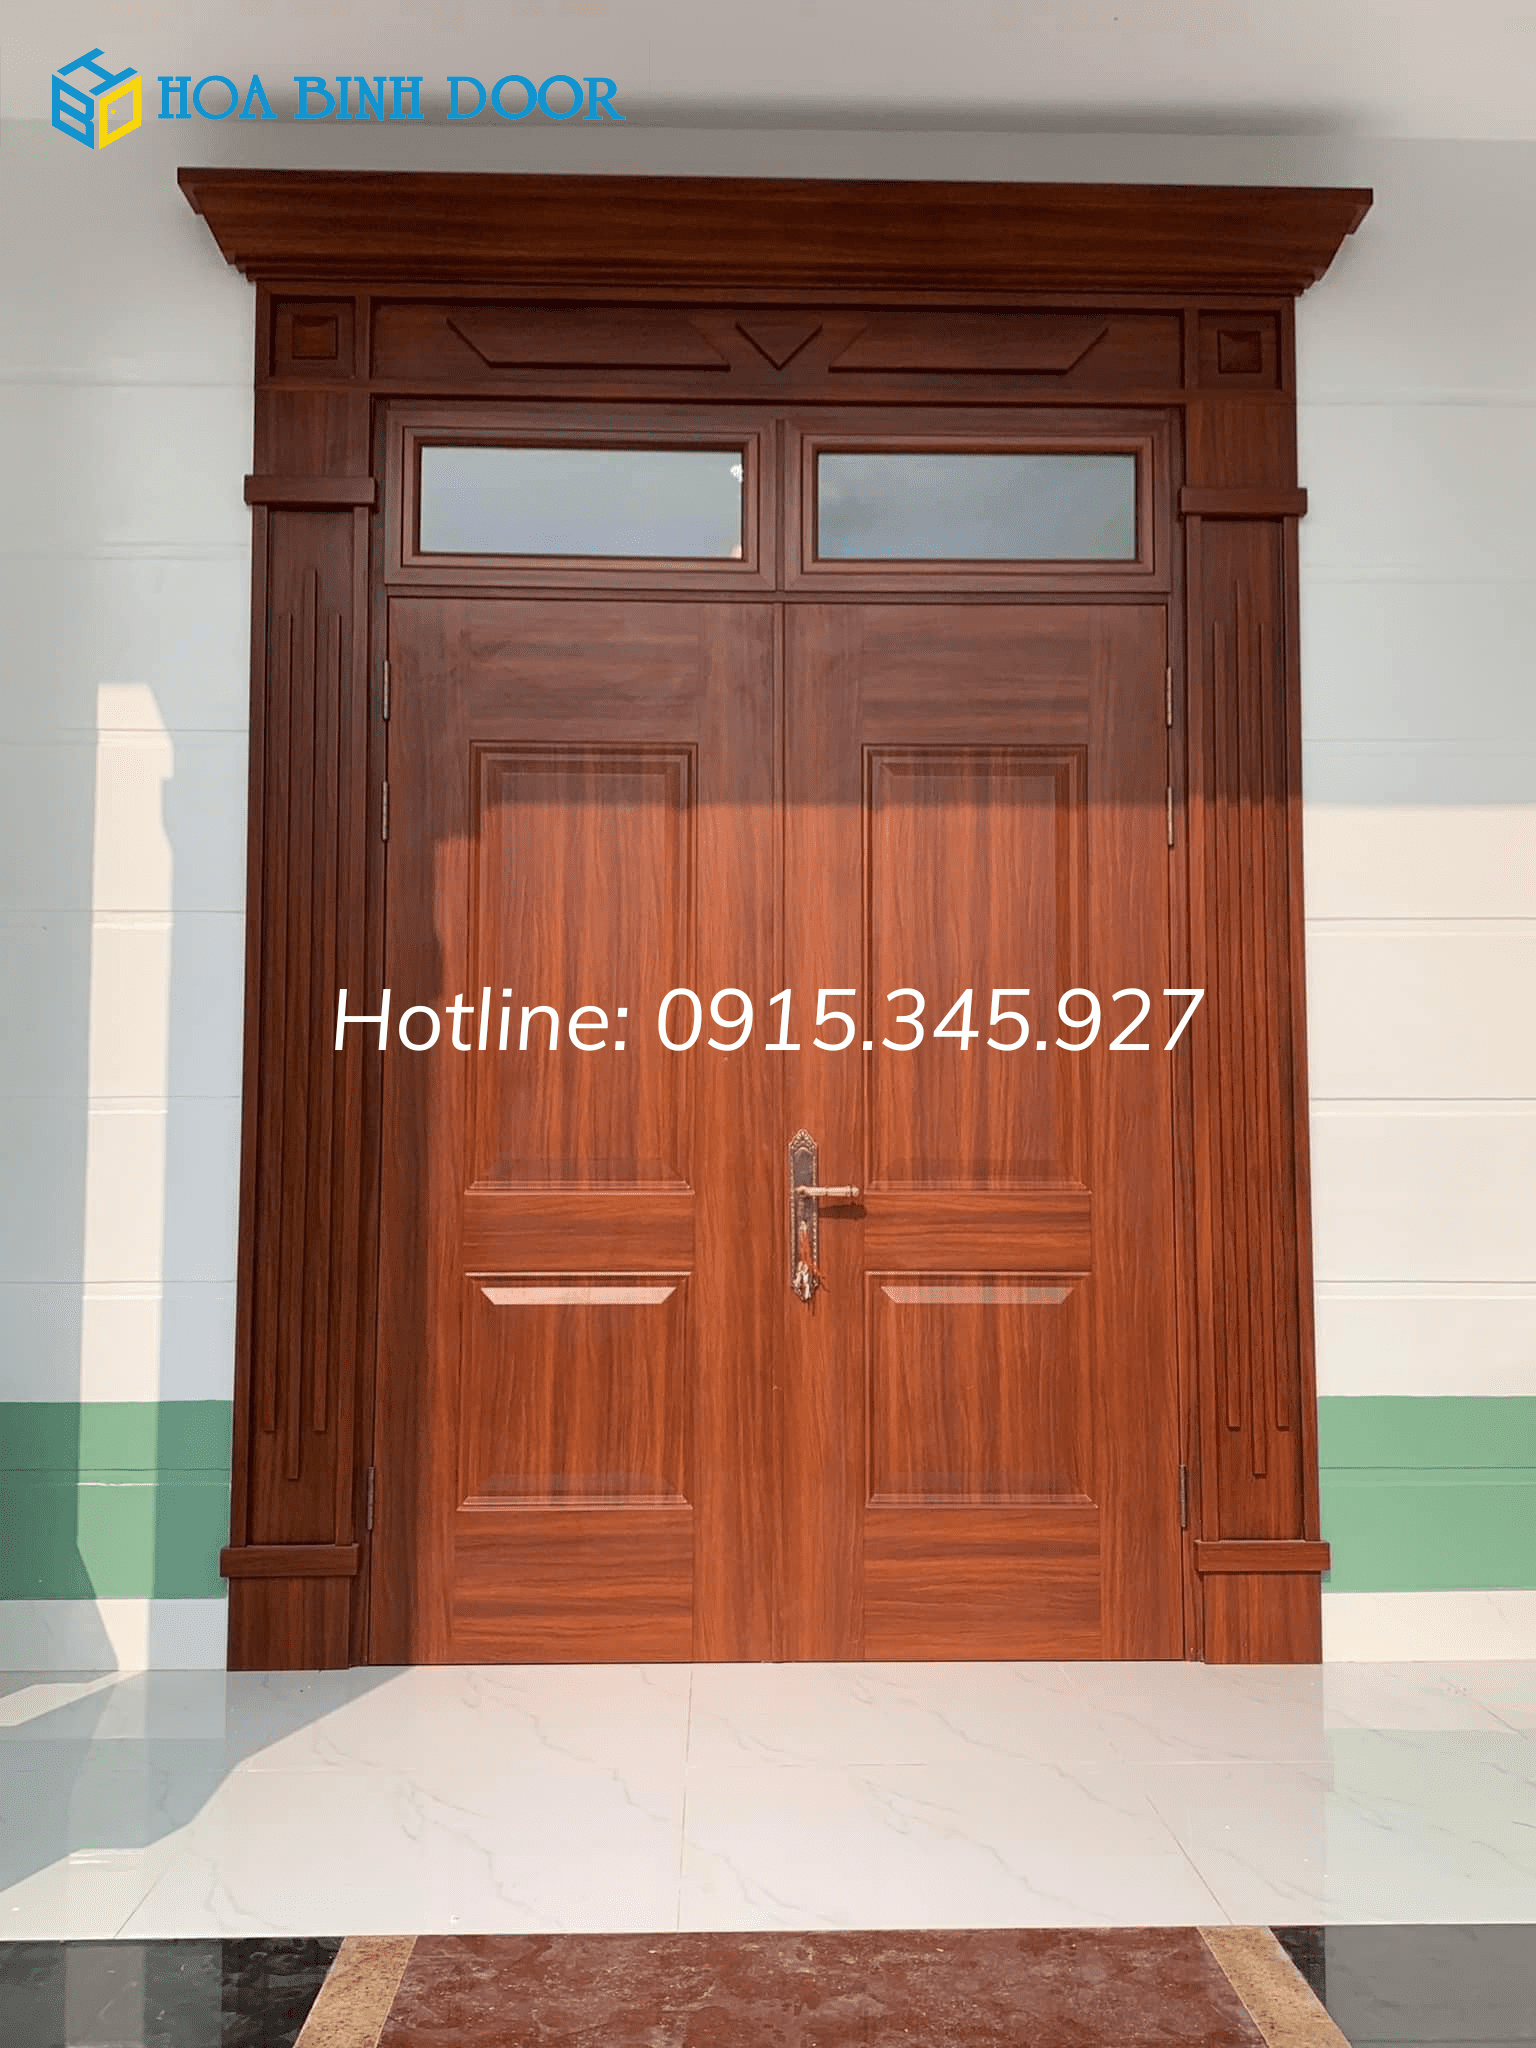 Hotline-0915.345.927-3-1.png